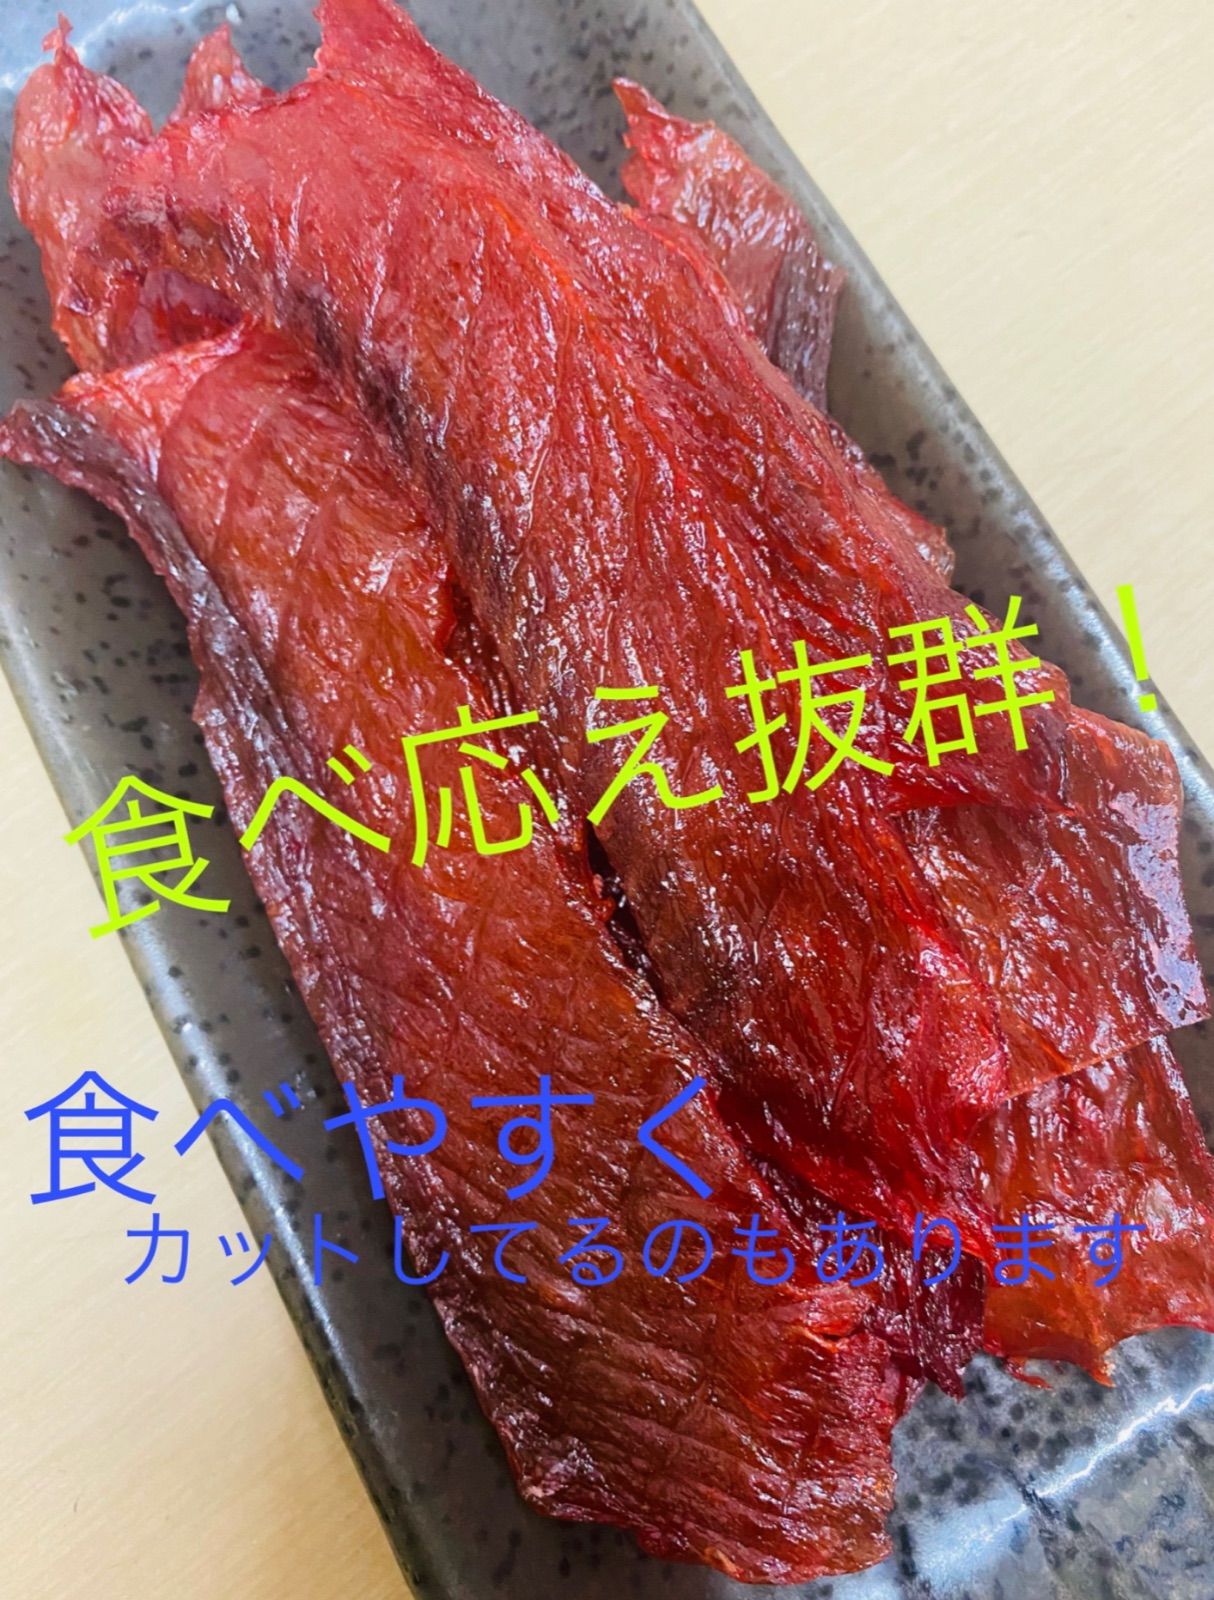 鮭とば 400g 北海道産 - 魚介類(加工食品)